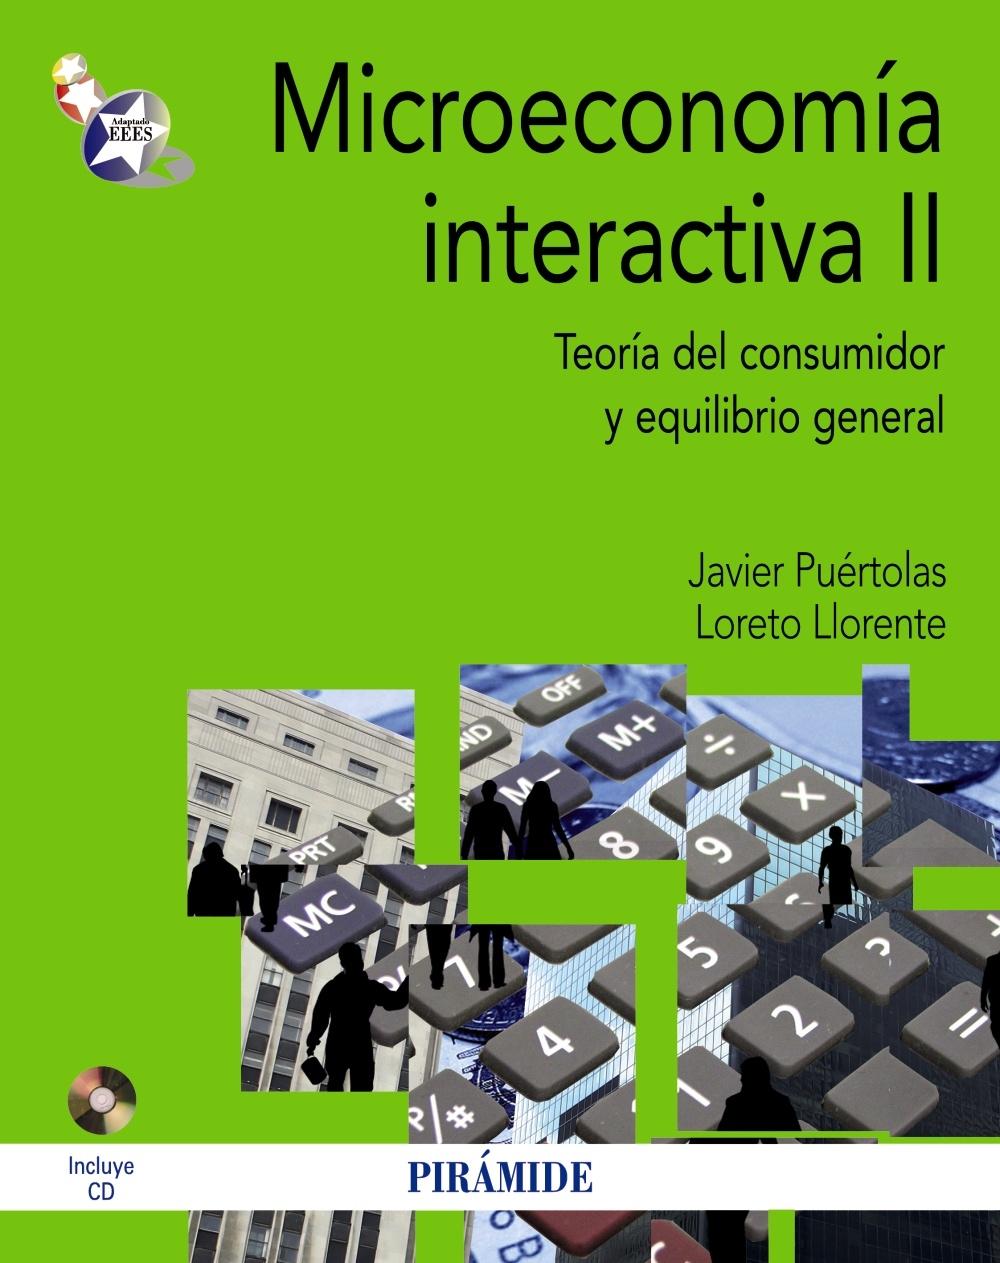 Microeconomía interactiva II "Teoría del consumidor y equilibrio general"